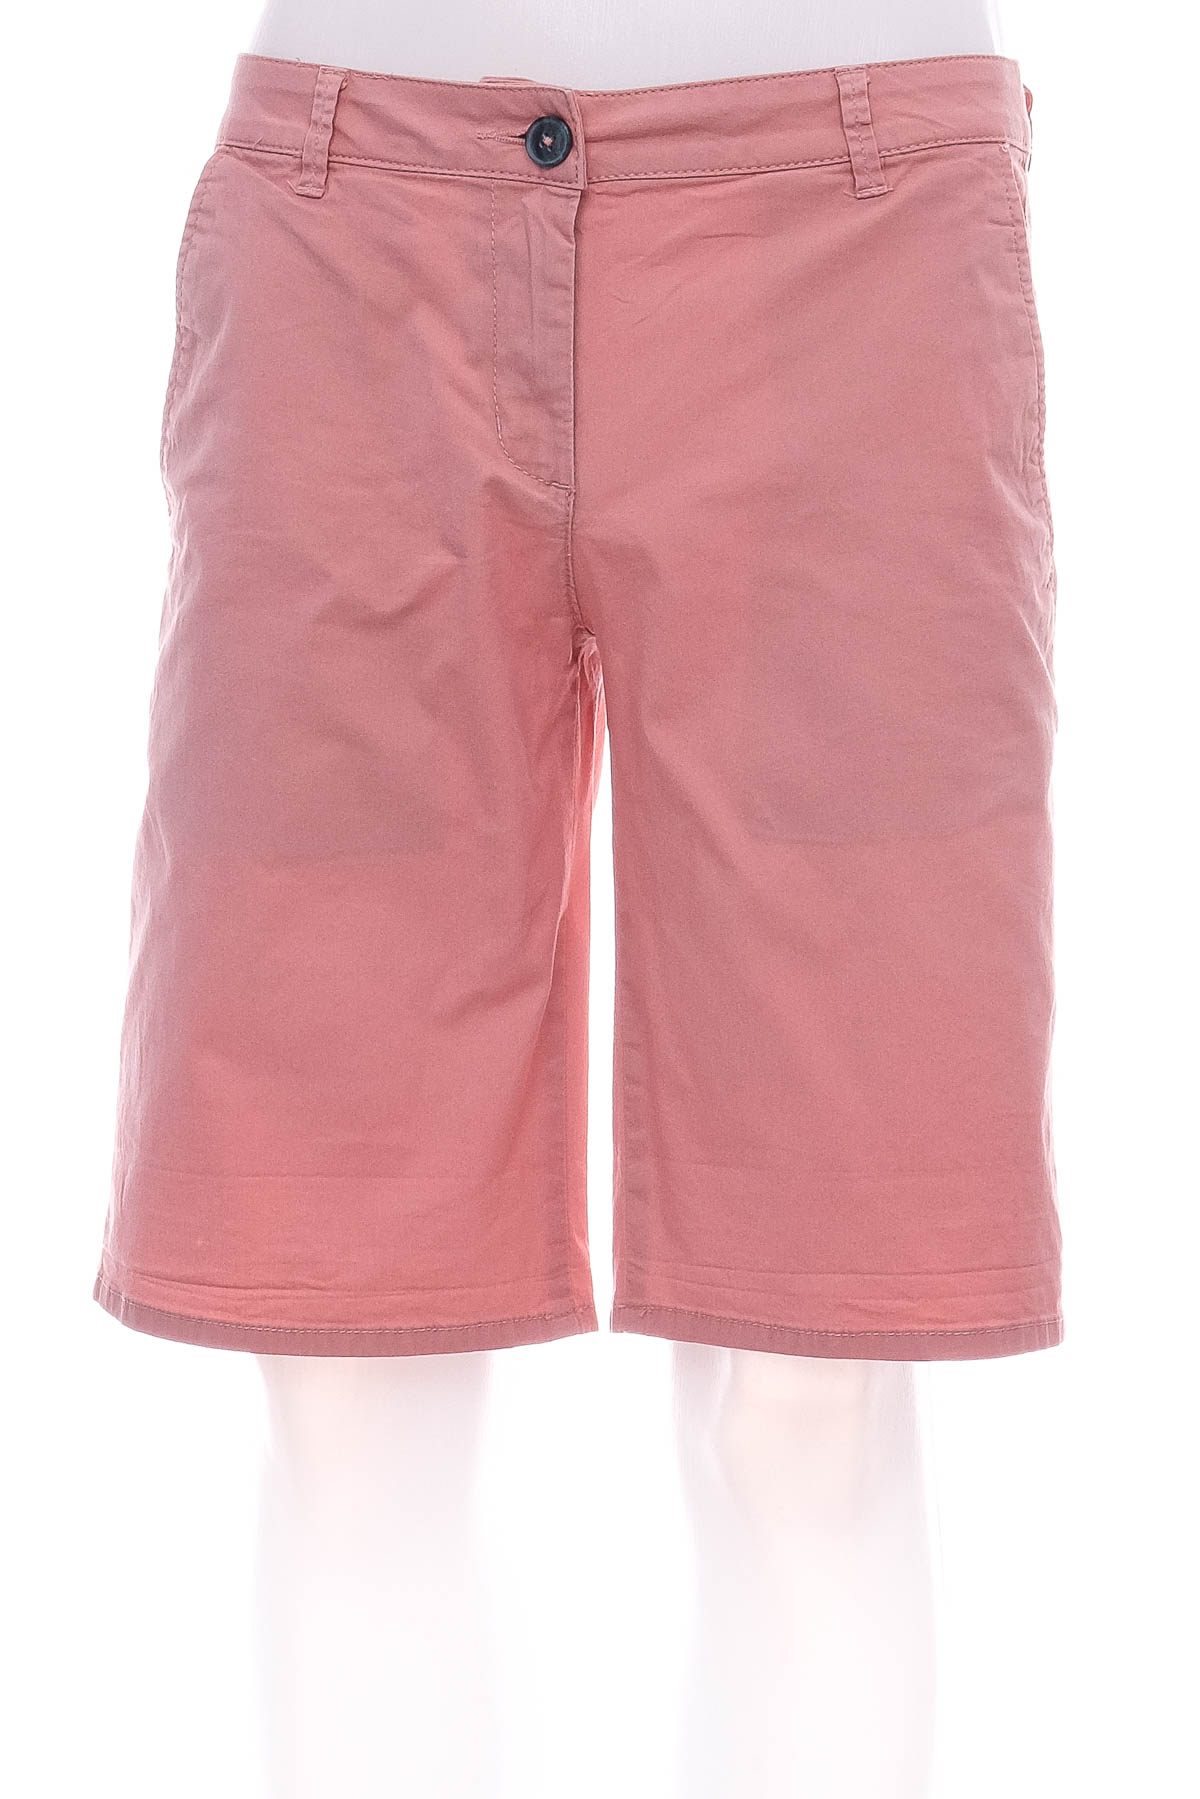 Men's shorts - TOM TAILOR - 0